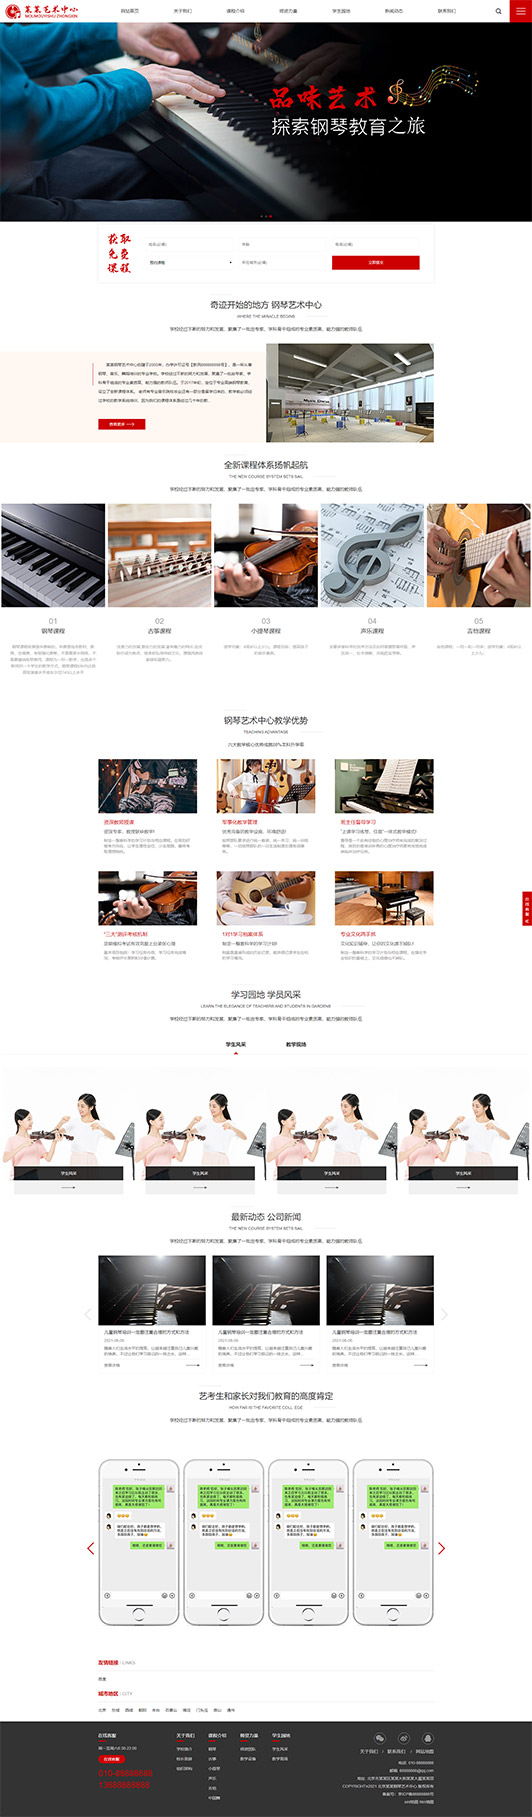 天水钢琴艺术培训公司响应式企业网站